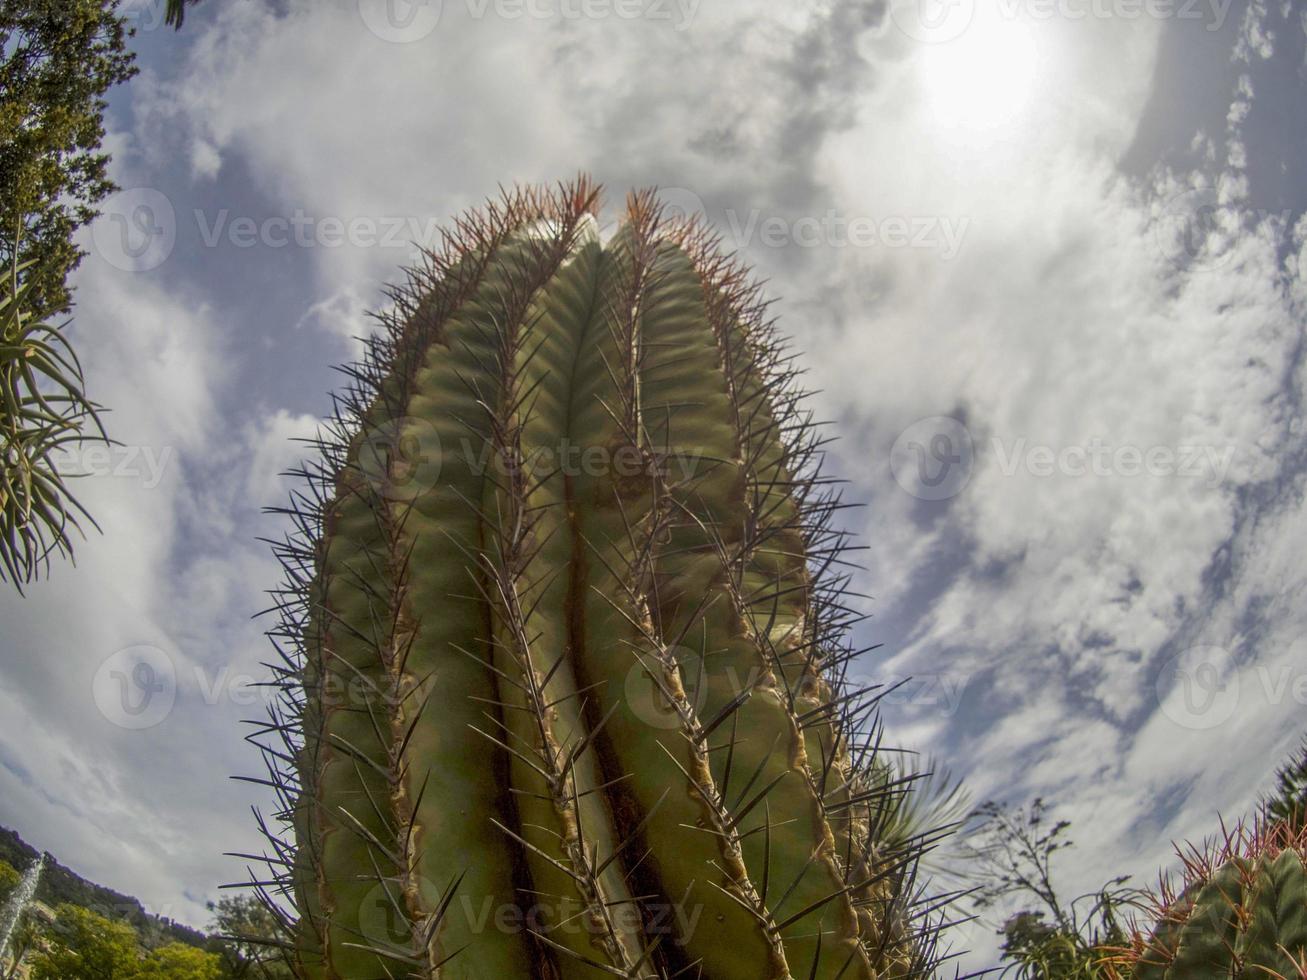 gros plan de cactus photo